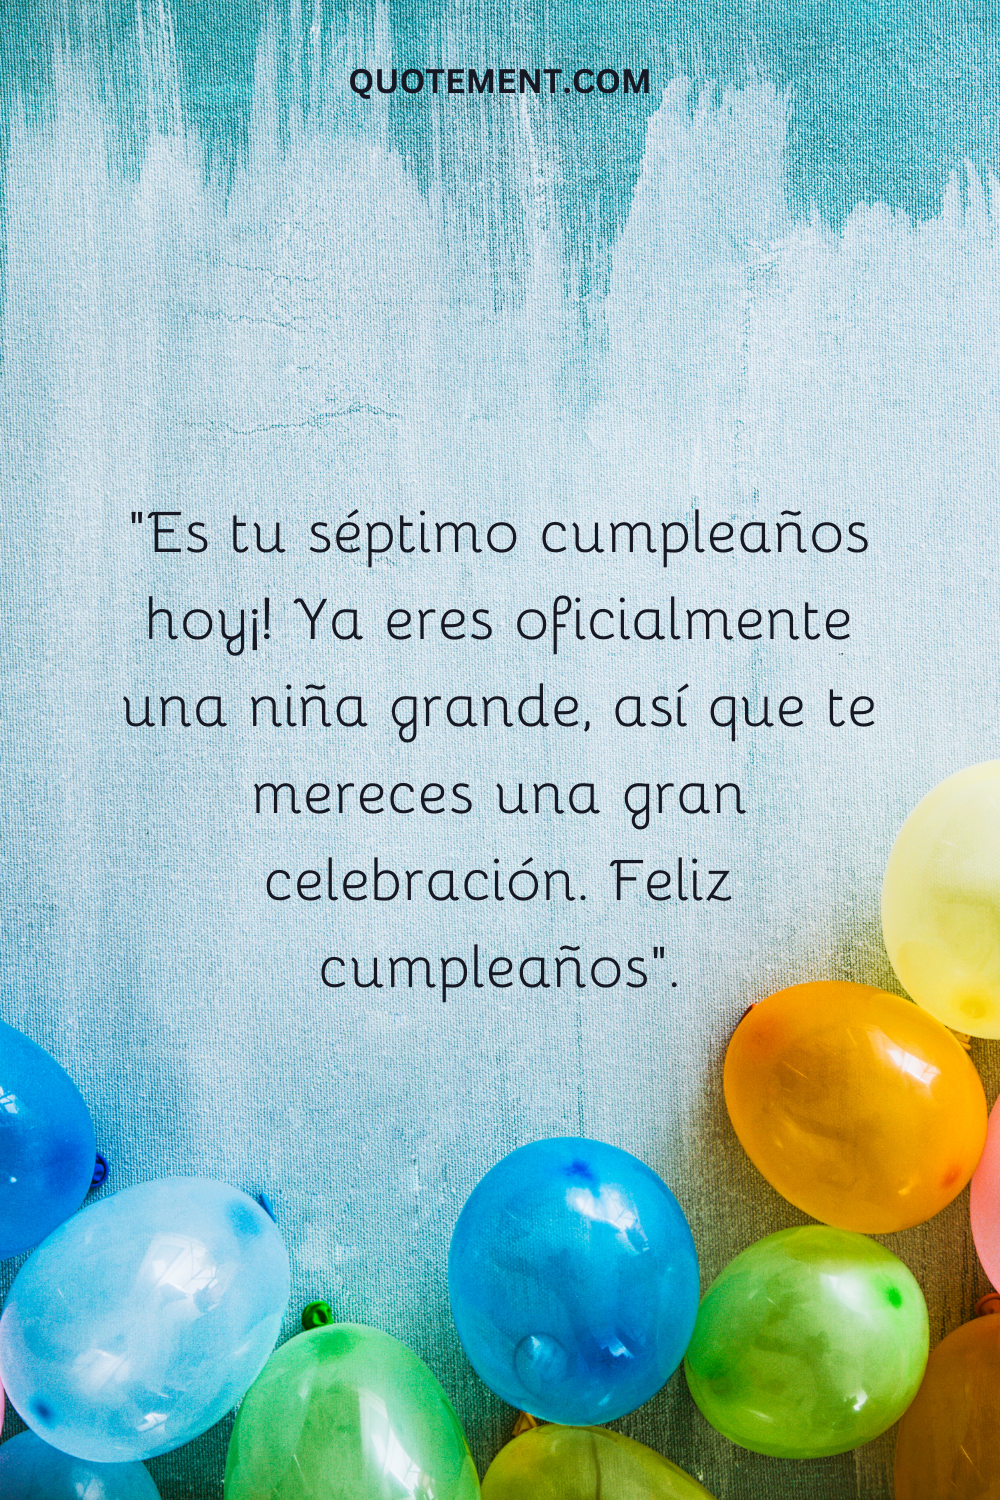 "¡Hoy cumples siete años! Ya eres oficialmente una niña grande, así que te mereces una gran celebración. Feliz cumpleaños".